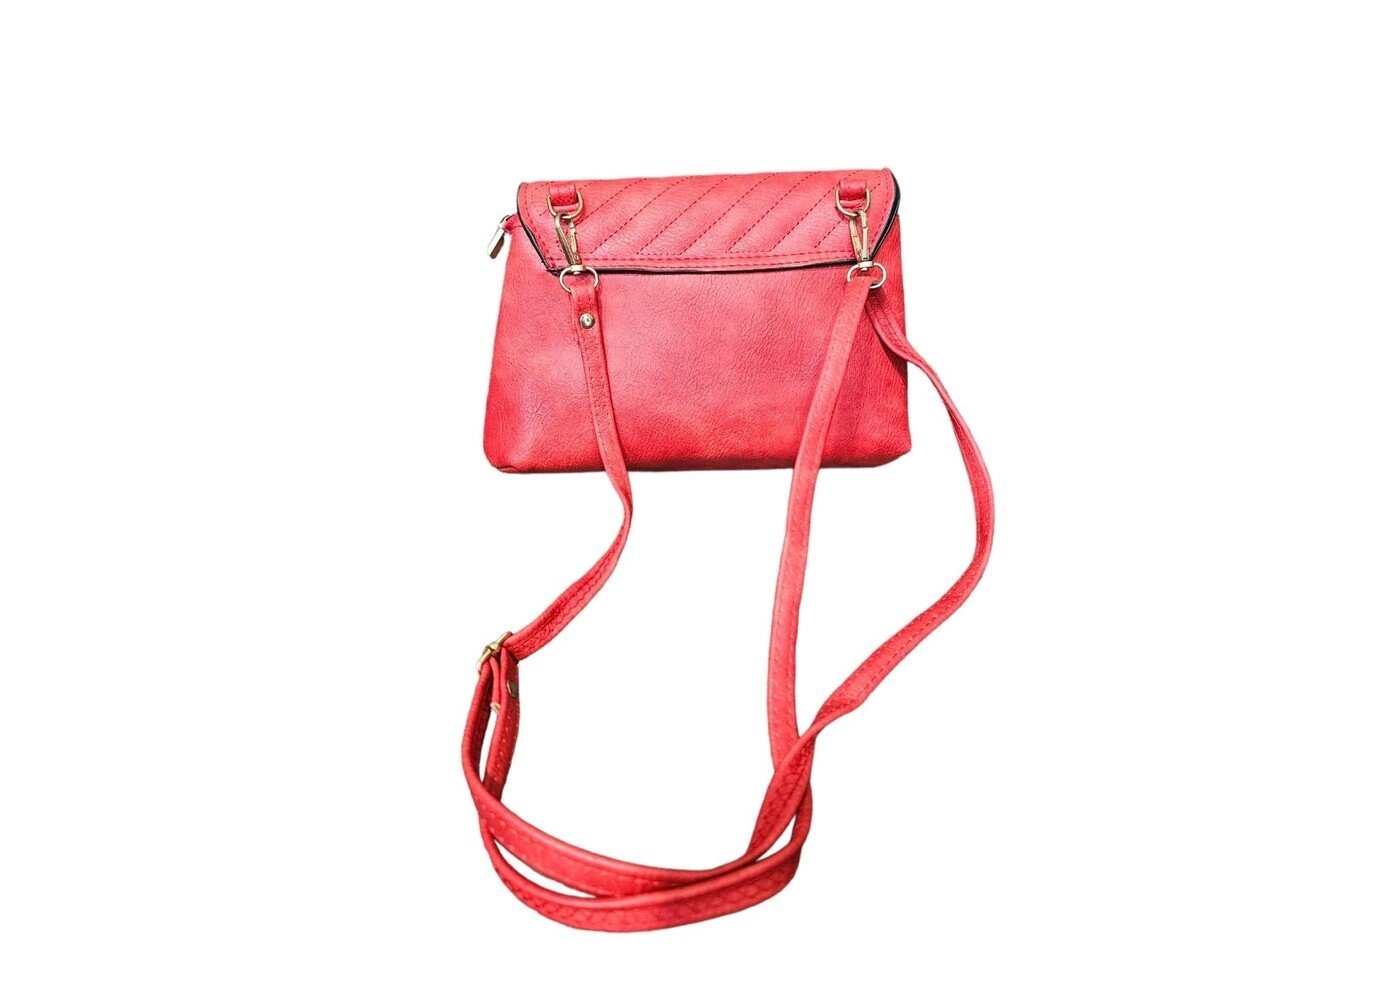 Ivys Clothing & Fashion Accessories Red  Handbag